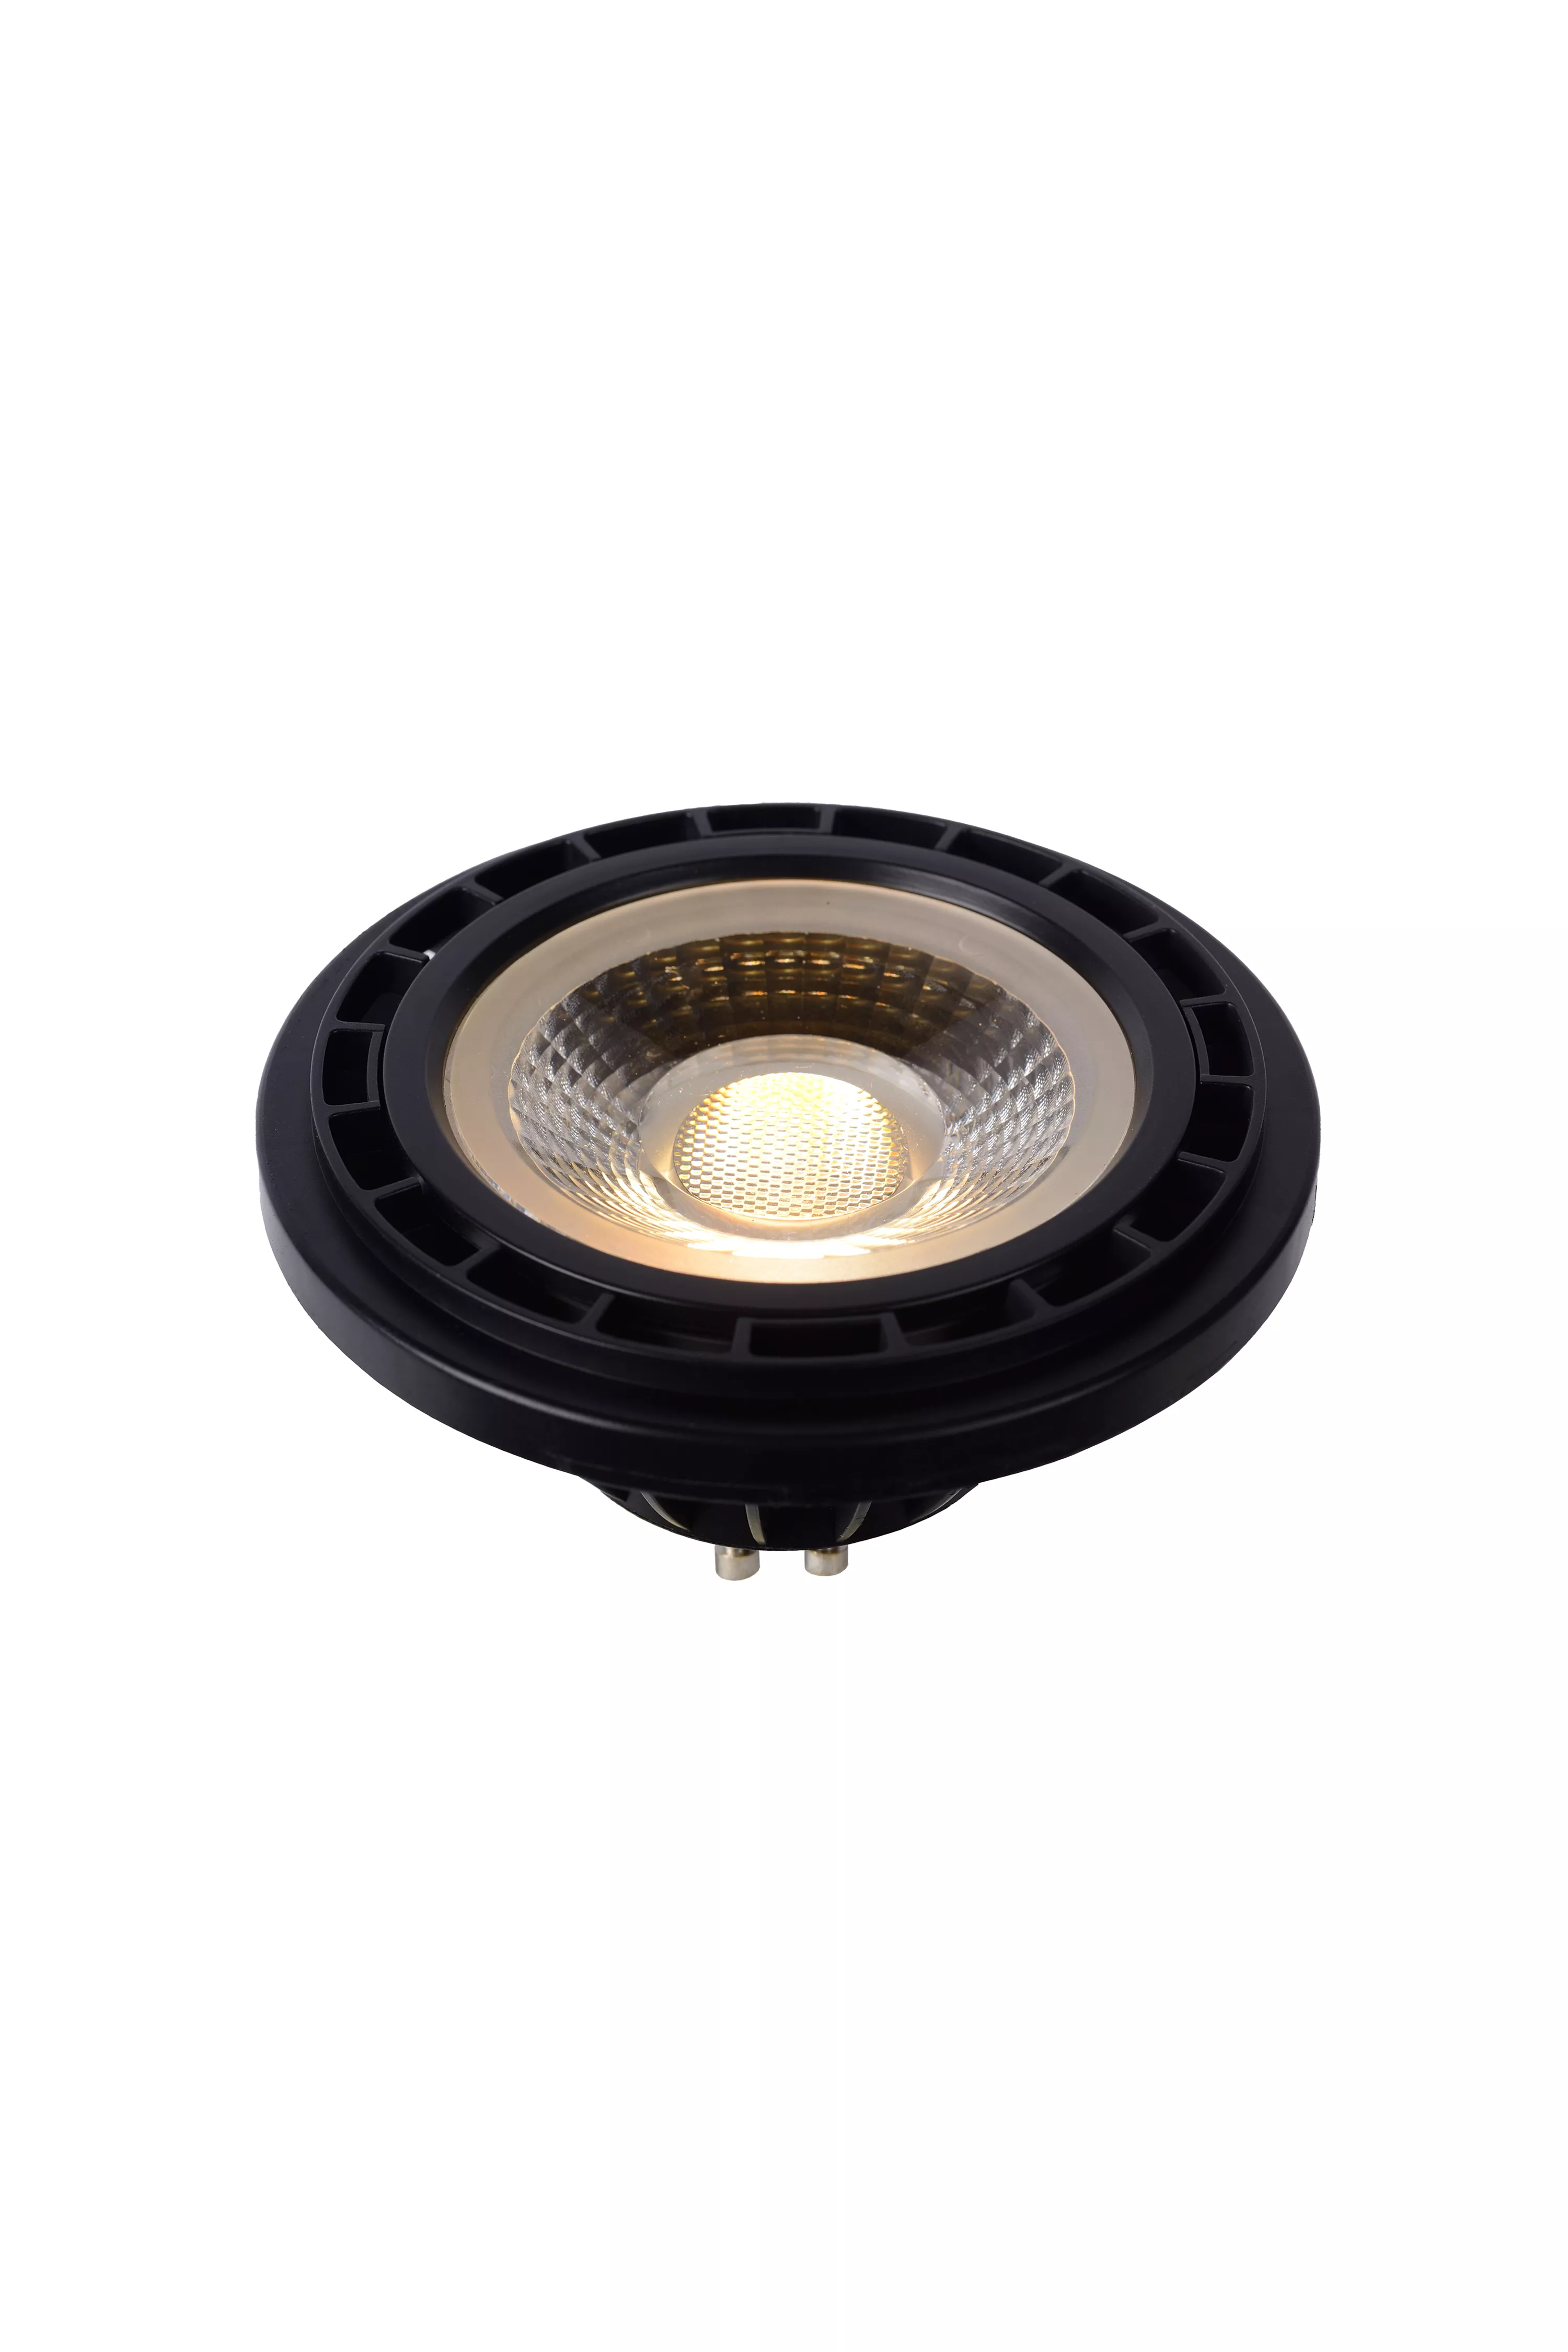 Lucide ES111 - bulb 11 cm - LED Dim to warm GU10 - 1x12W 2200K/3000K - Black